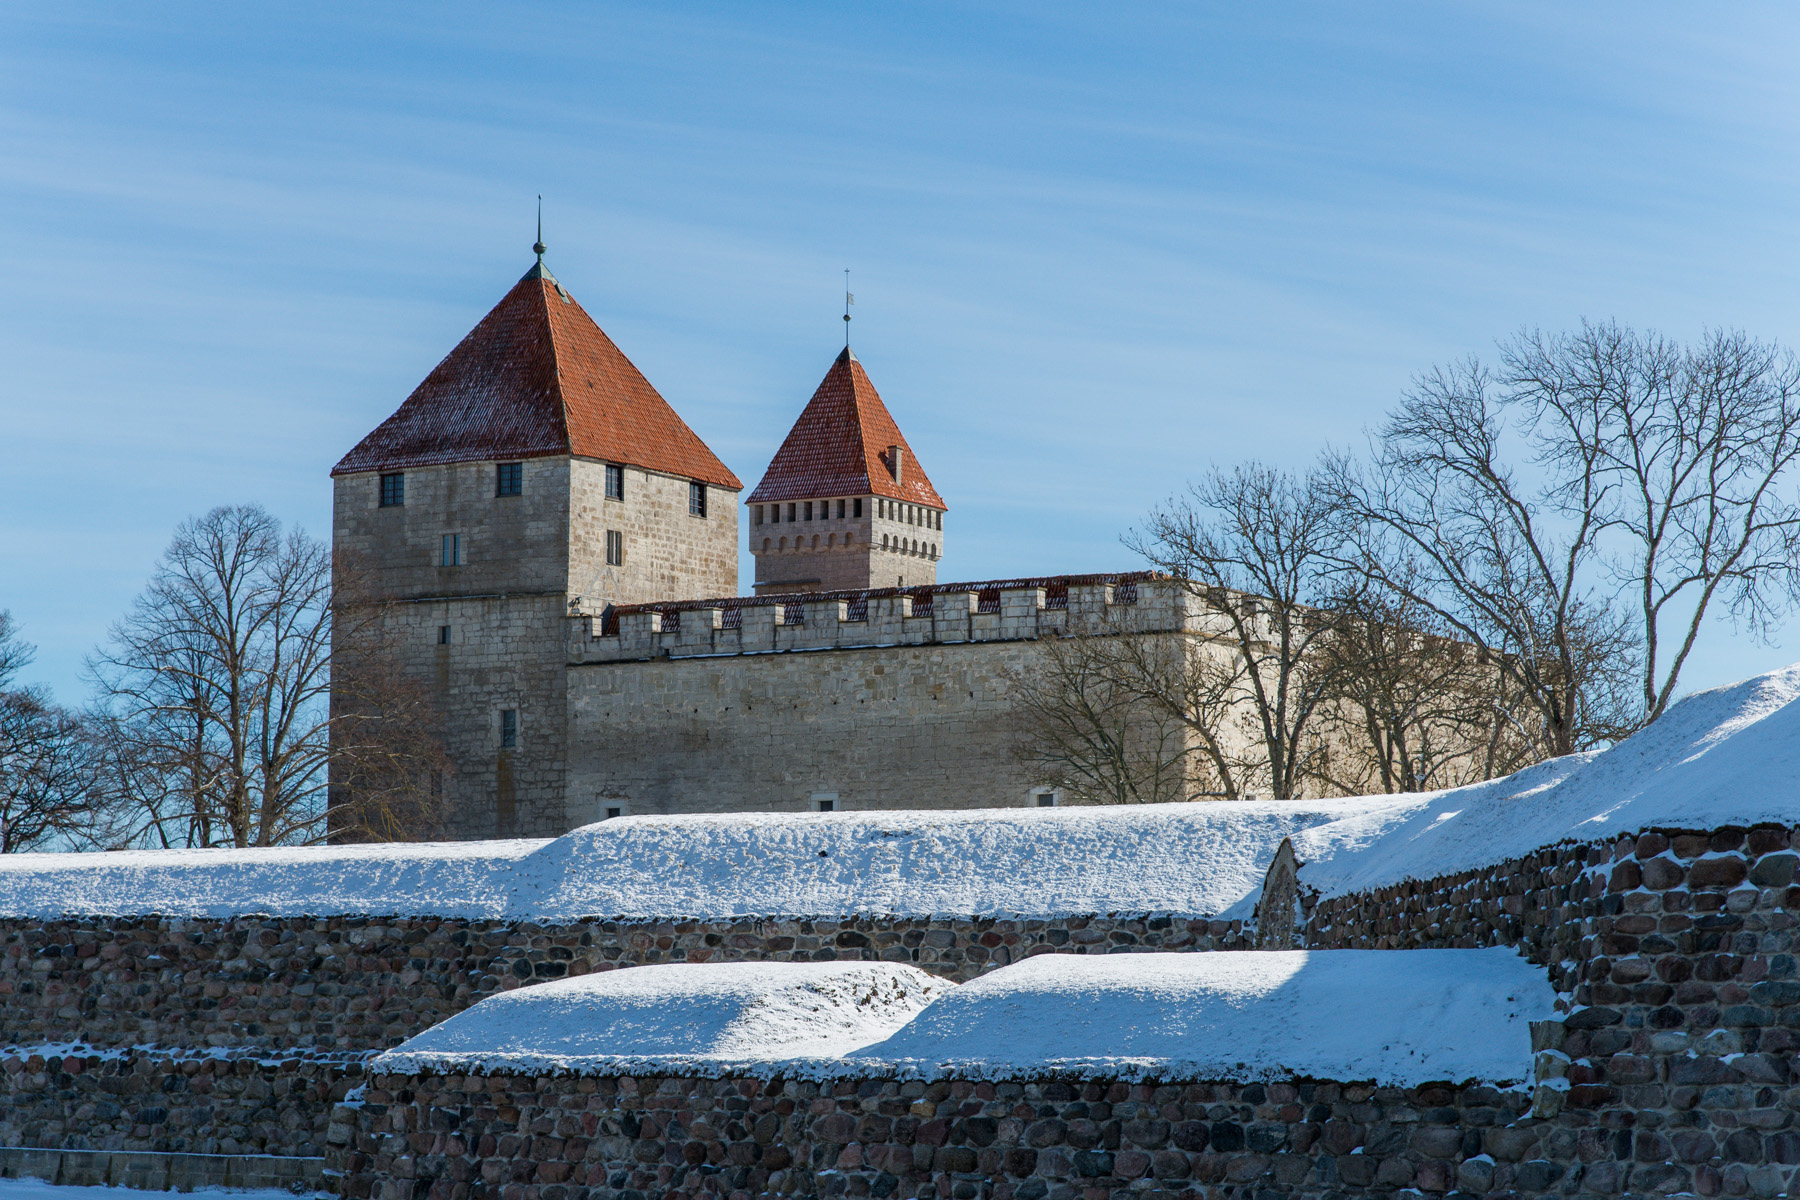 20160320-Saaremaa-582-Kuressaare.jpg - 18.-20. märts 2016. Saaremaa ringreis. Kuressaare loss